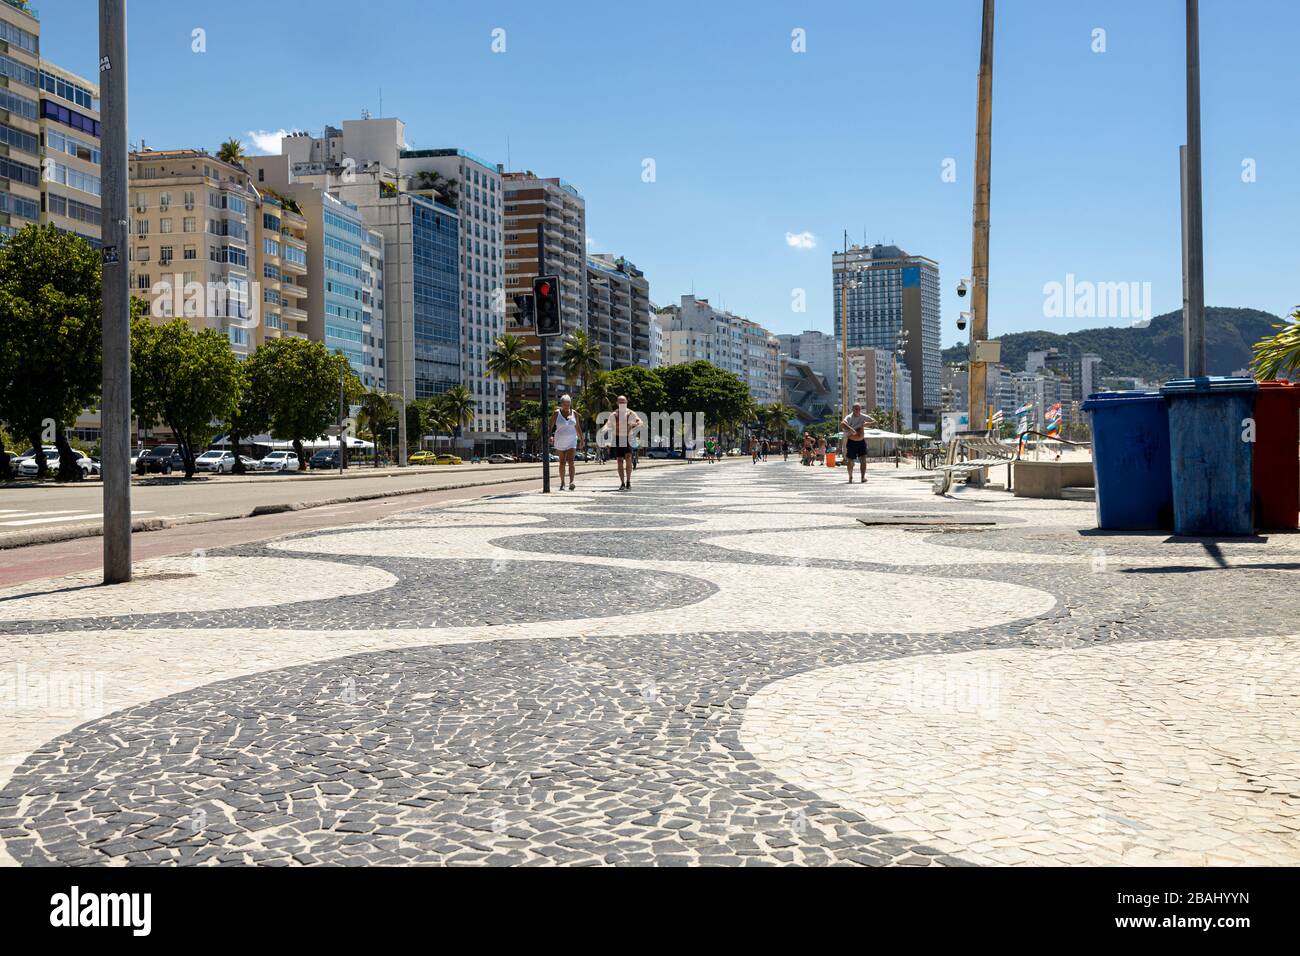 Boulevard Copacabana avec un modèle typique de tuiles portugaises avec seulement quelques personnes âgées marchant autour pendant l'éclosion du virus COVID-19 Corona Banque D'Images